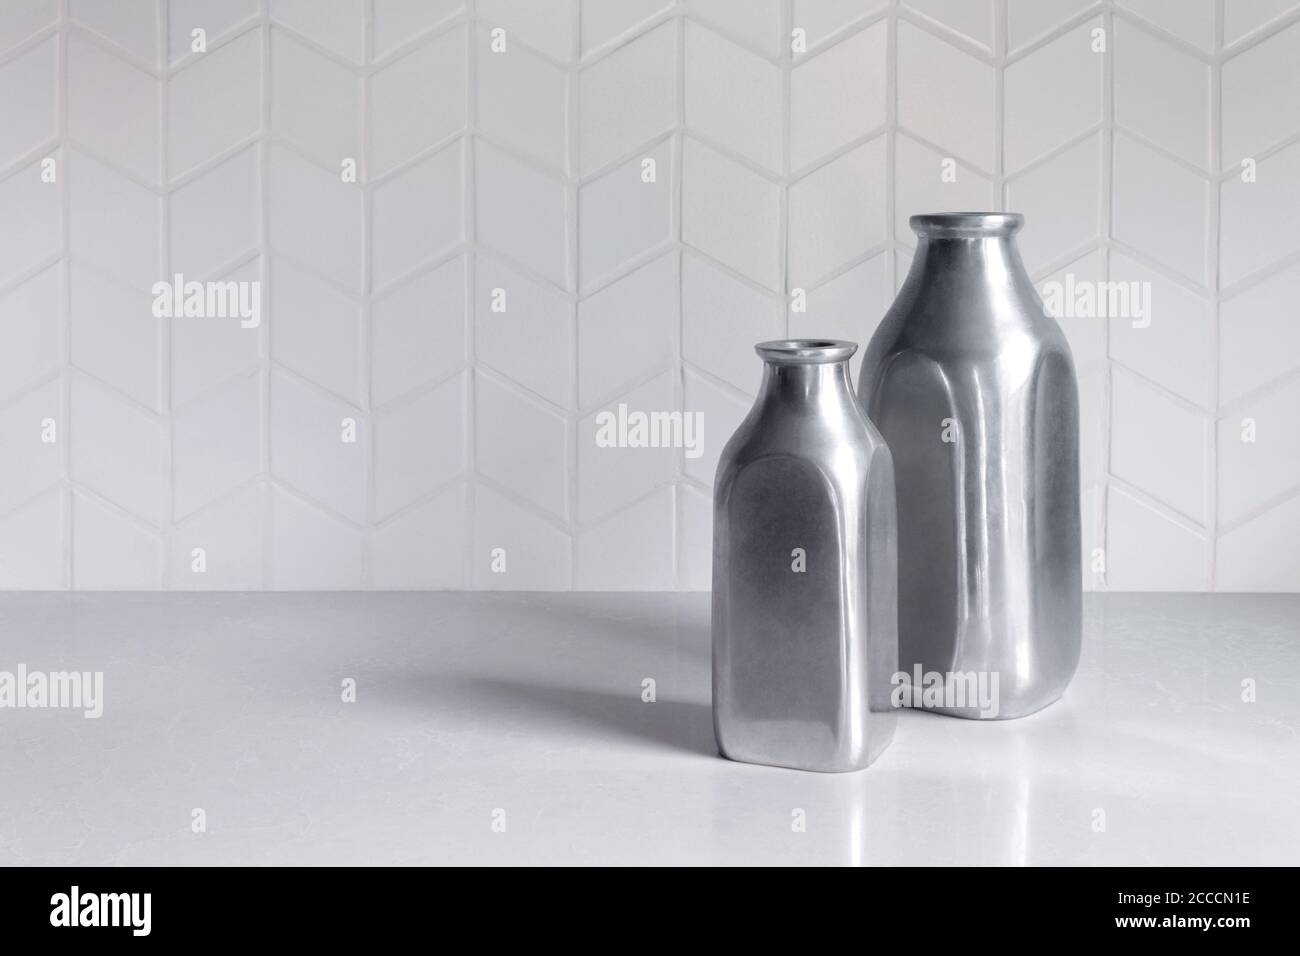 Zwei leere silberfarbene Metallflaschen oder Vasen auf einem Weiße Theke mit einem weißen Chevron Fliesenmuster backsplash mit Speicherplatz kopieren Stockfoto